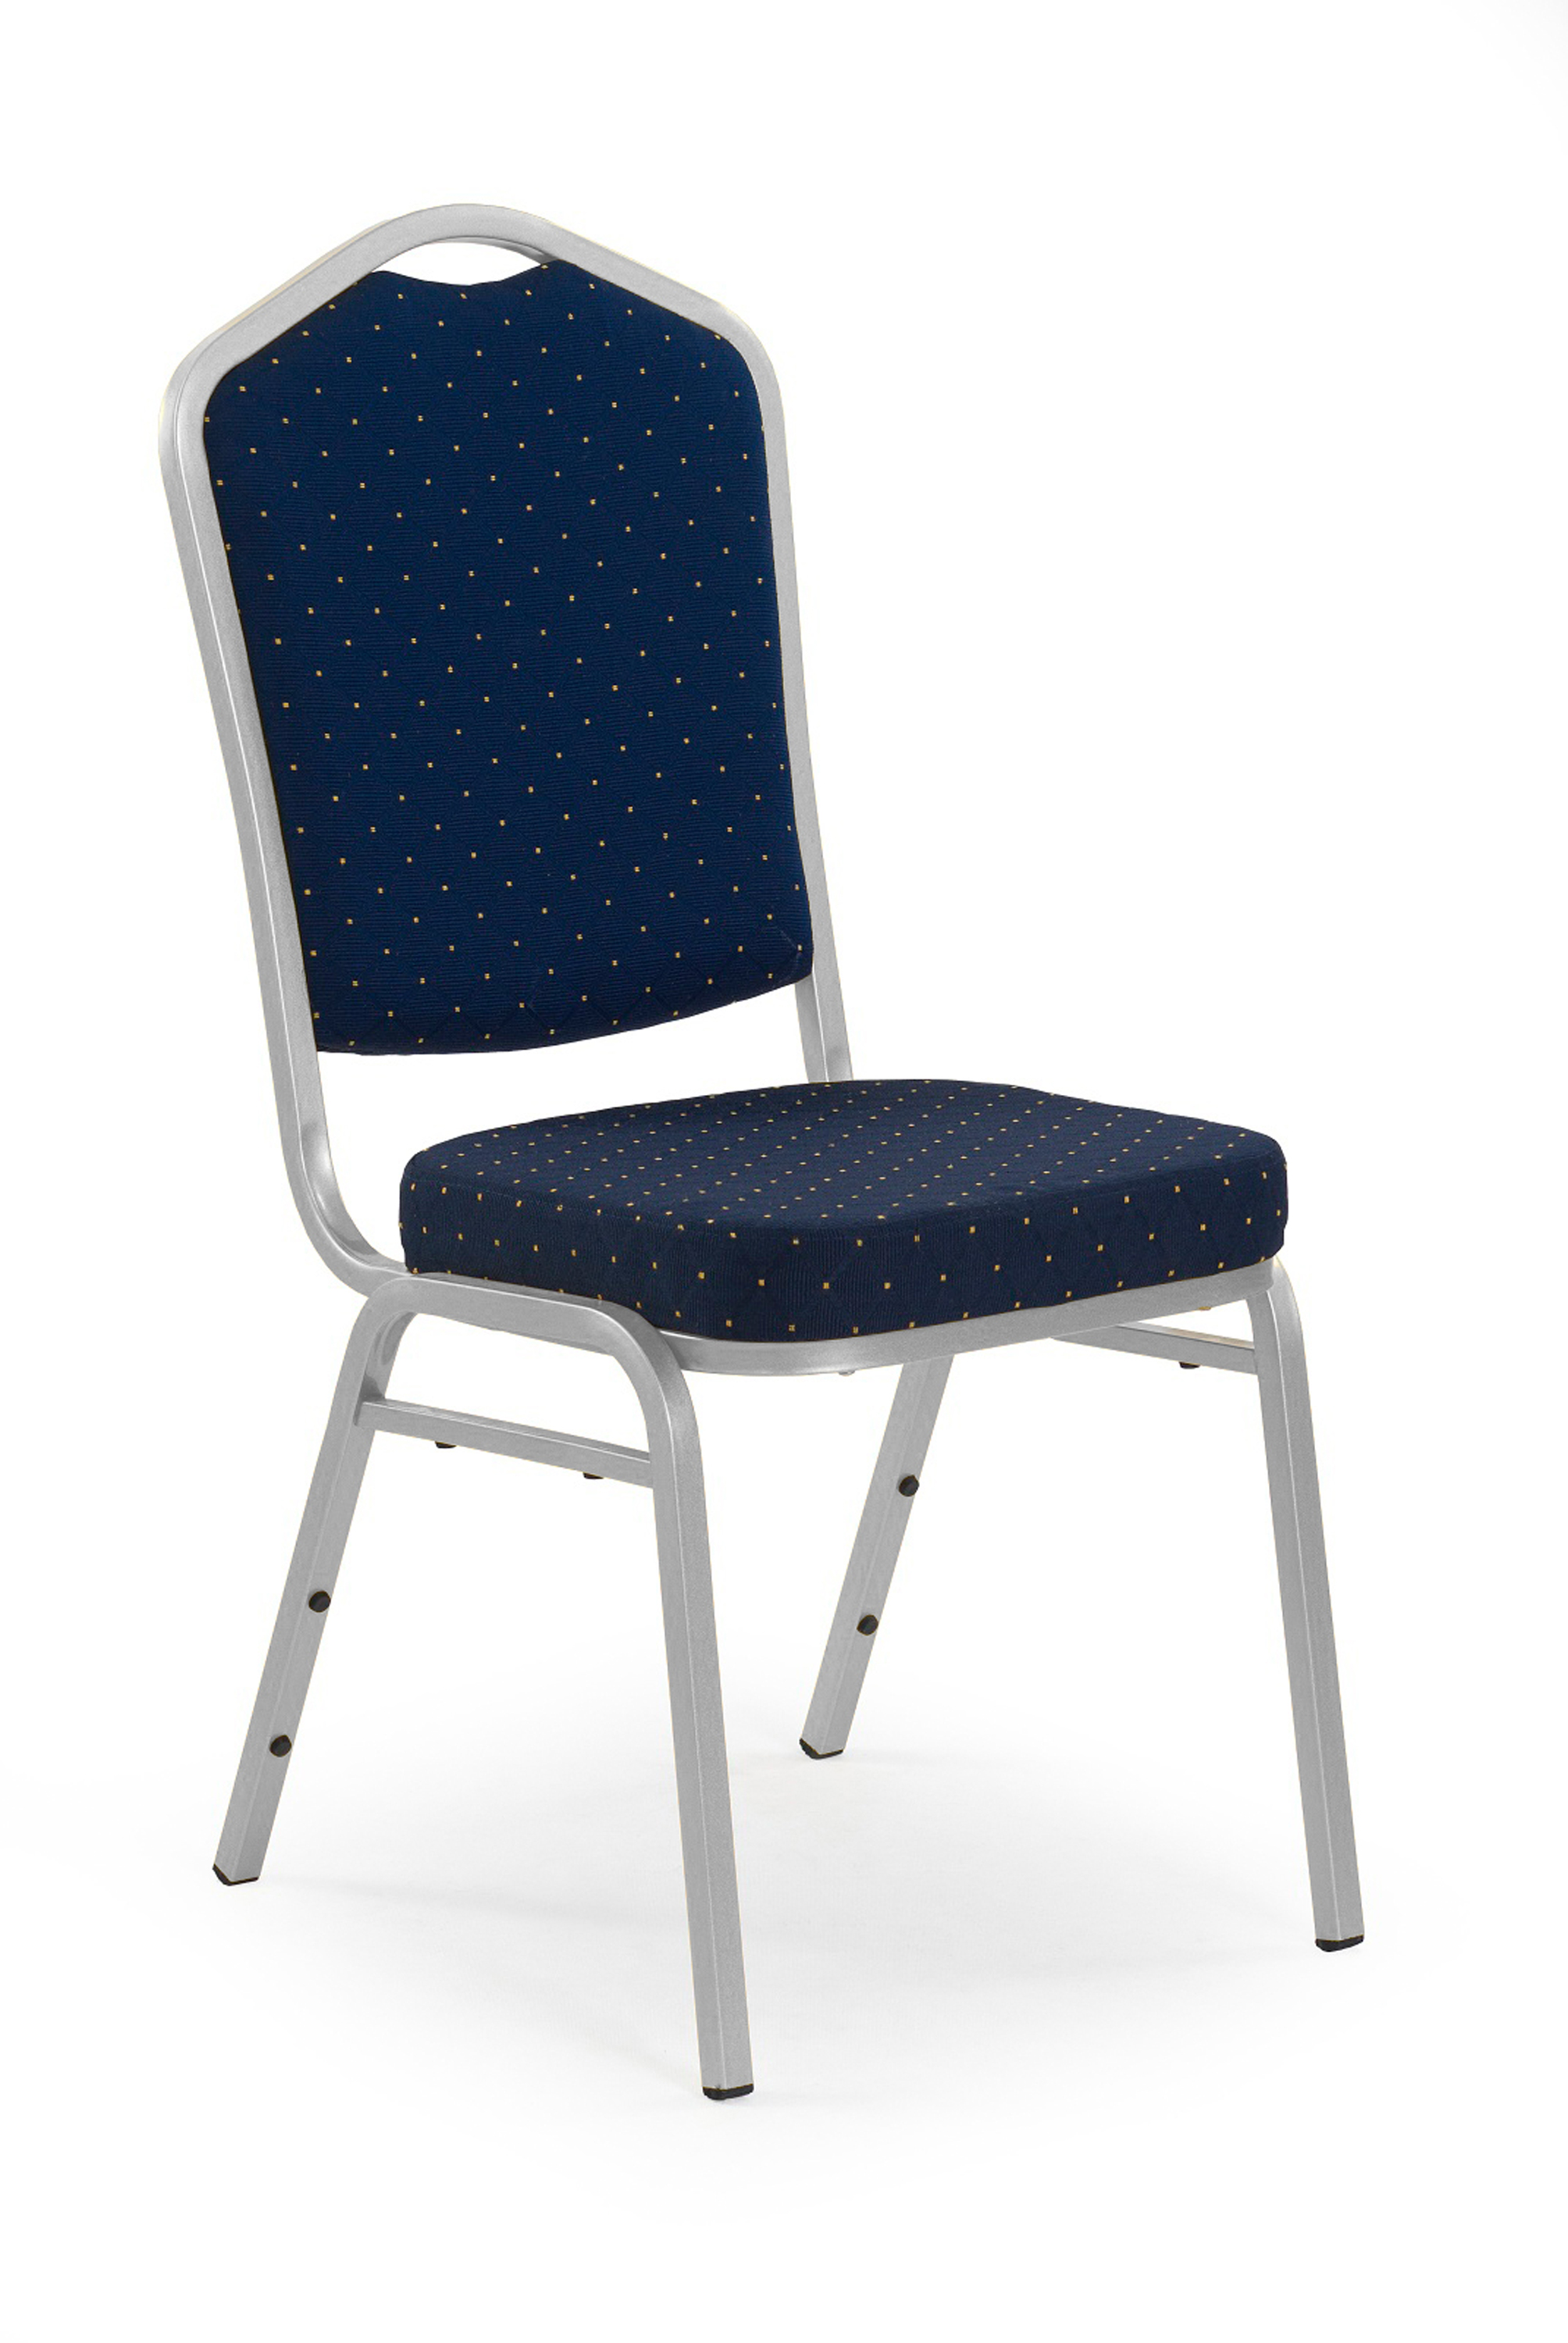 K66S Židle Modrá, Konstrukce Stříbrná k66s Židle Modrá, Konstrukce Stříbrná